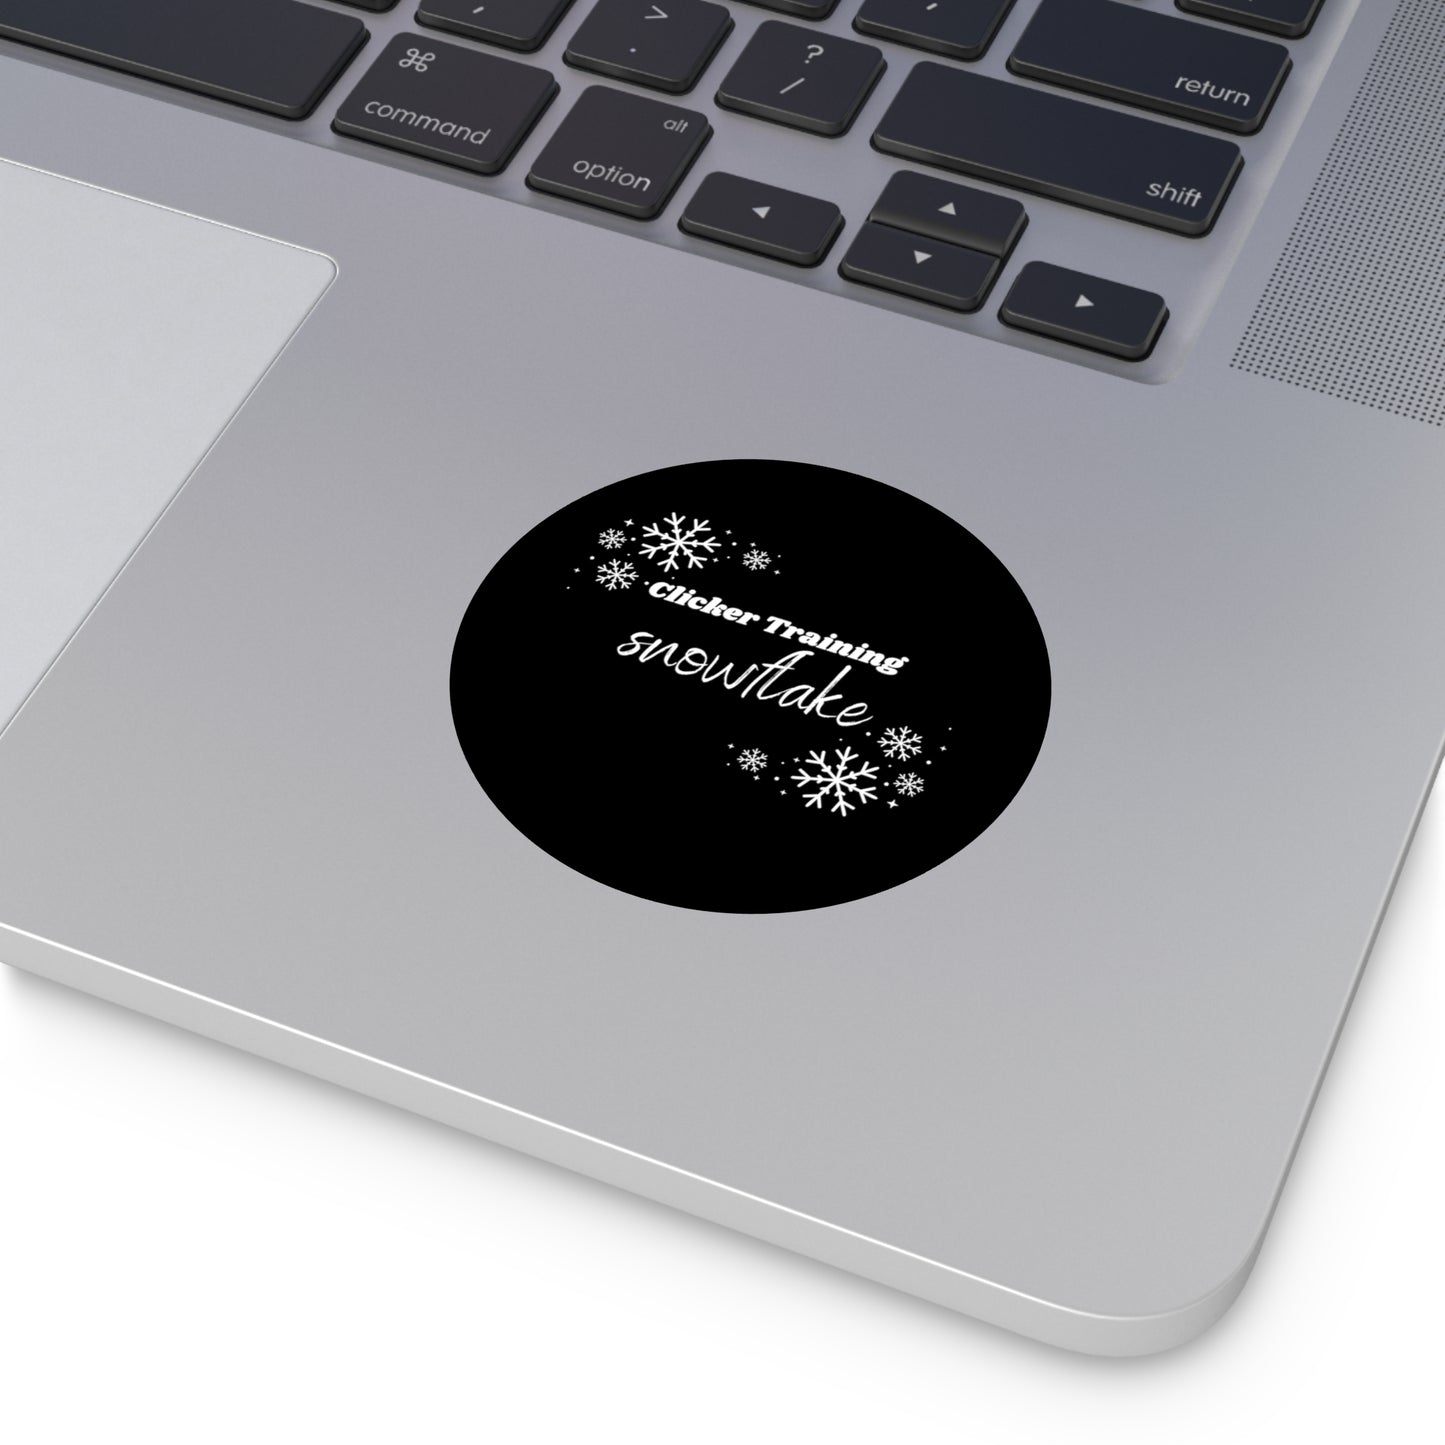 Clicker Training Snowflake Round Vinyl Sticker